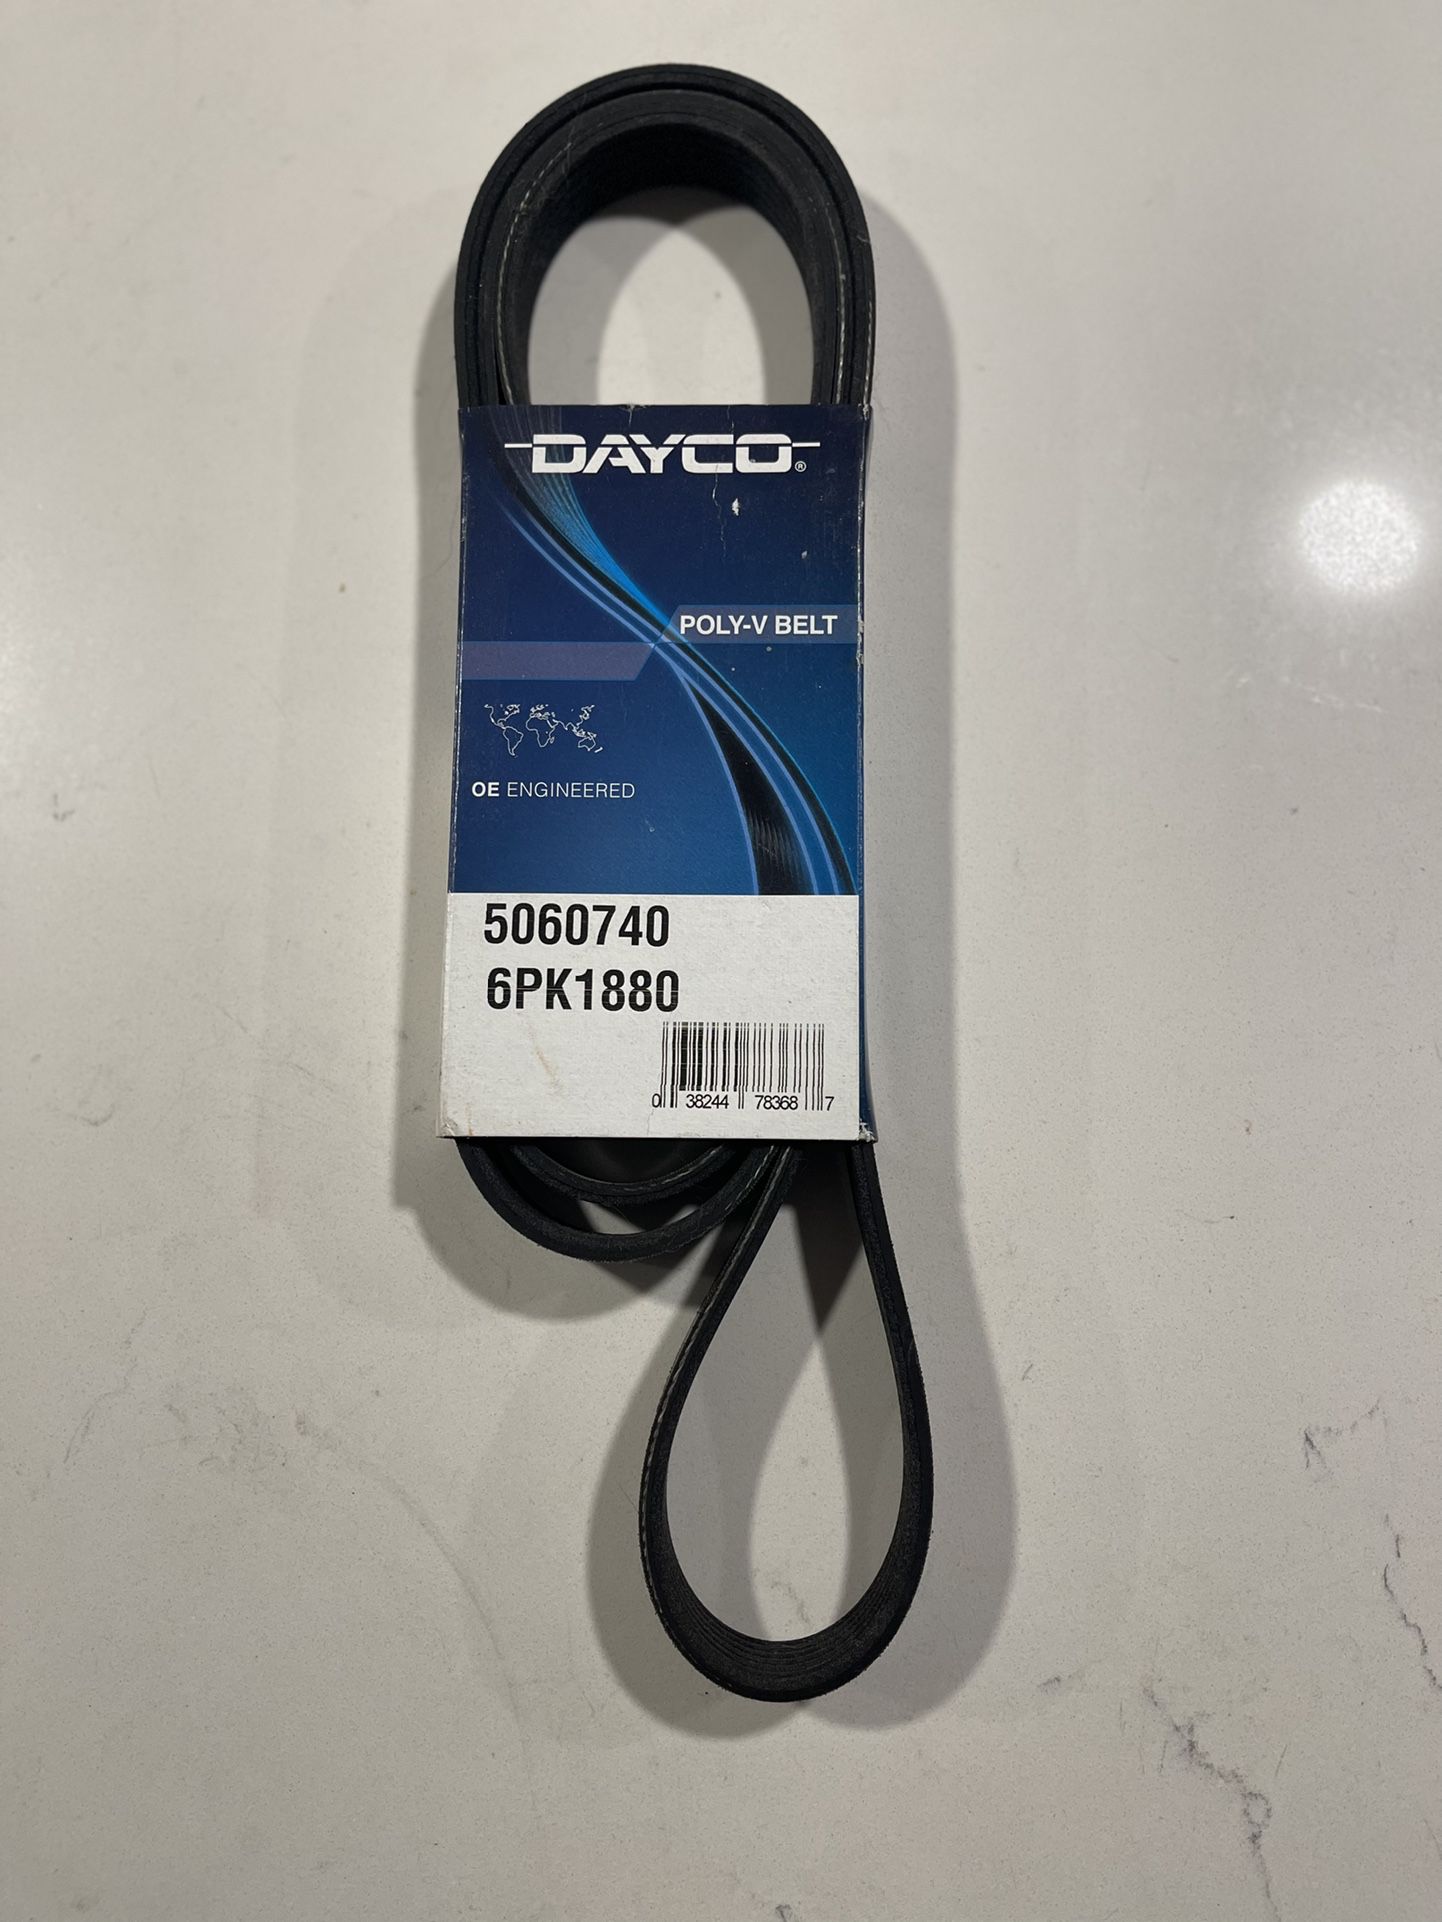 Dayco Drive belt 6pk1880